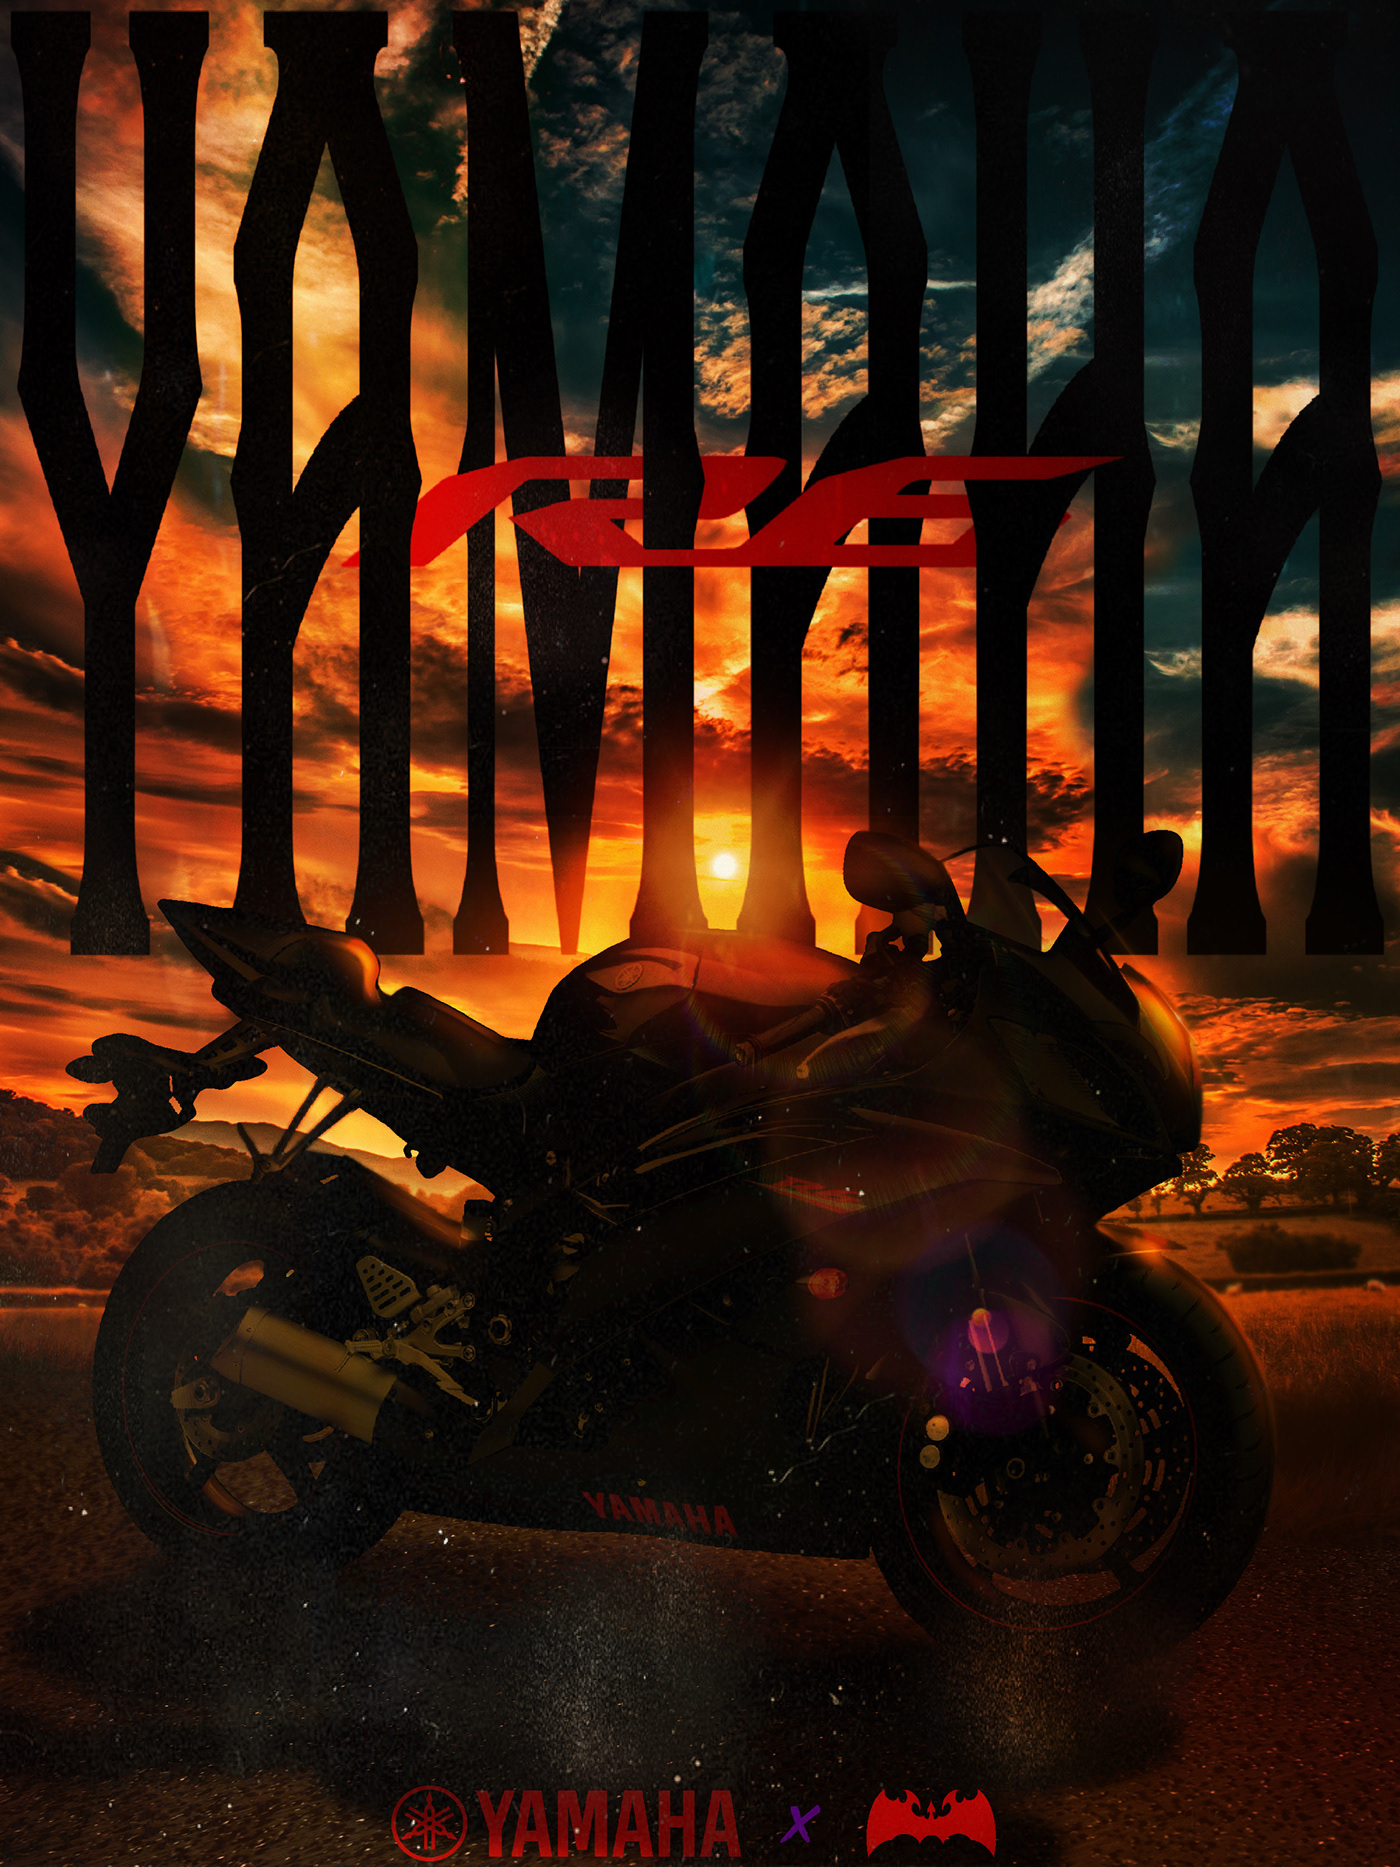 motorcycle yamaha poster design sunset R6 Bike